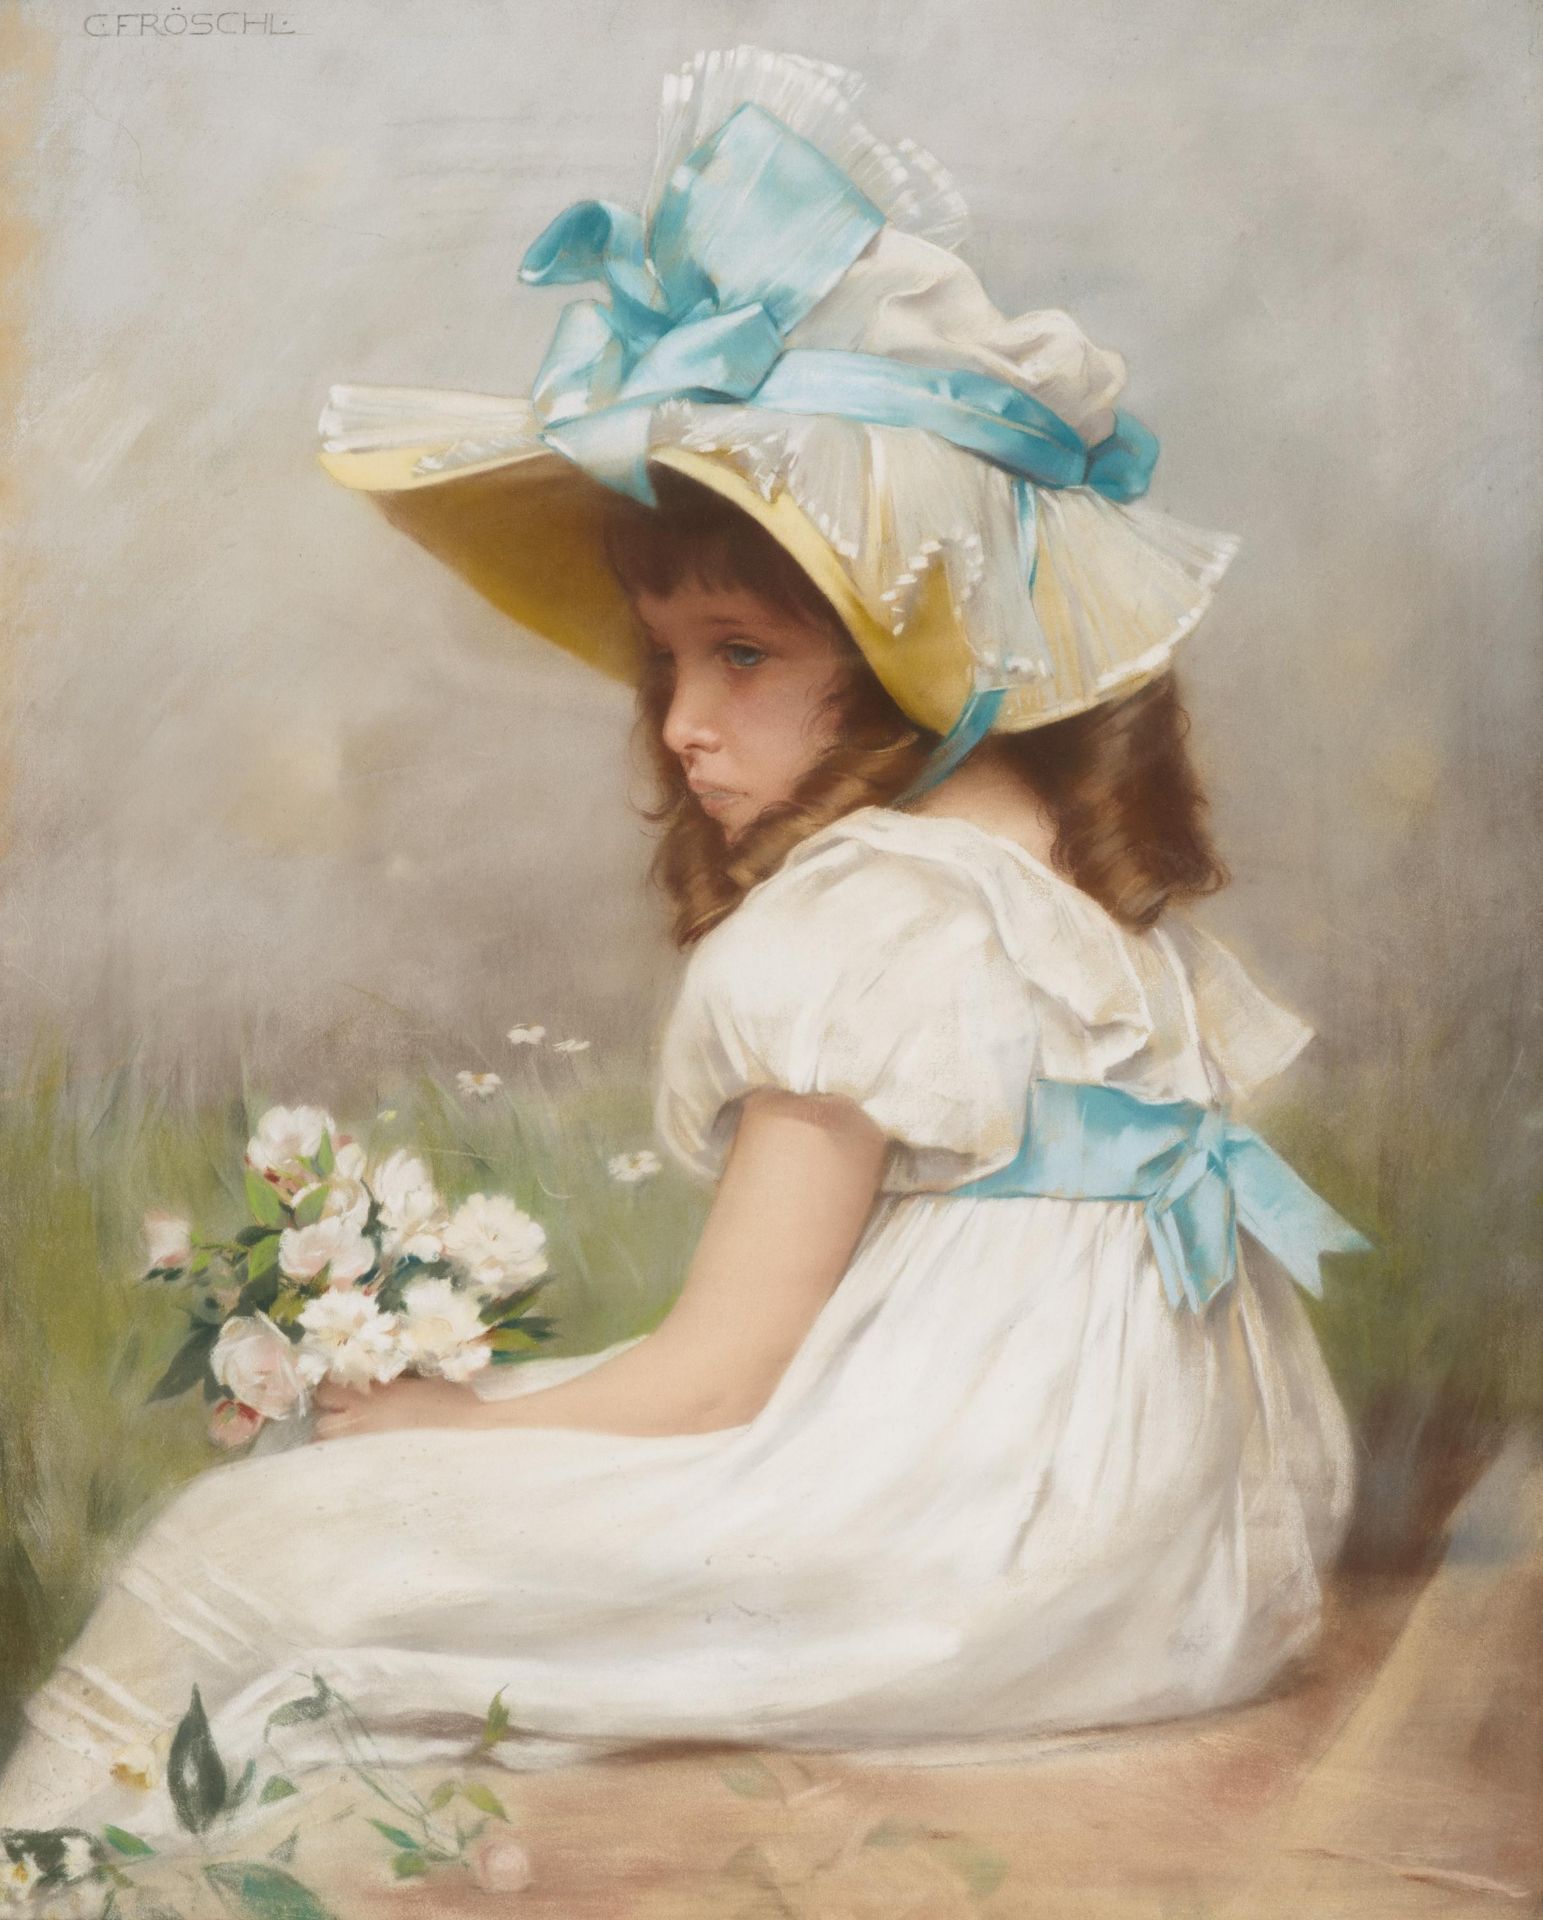 Fröschl, Carl. Wien 1848 - 1934. Träumendes Mädchen. Pastell auf Leinwand. Doubliert. 76,5 x 60cm.